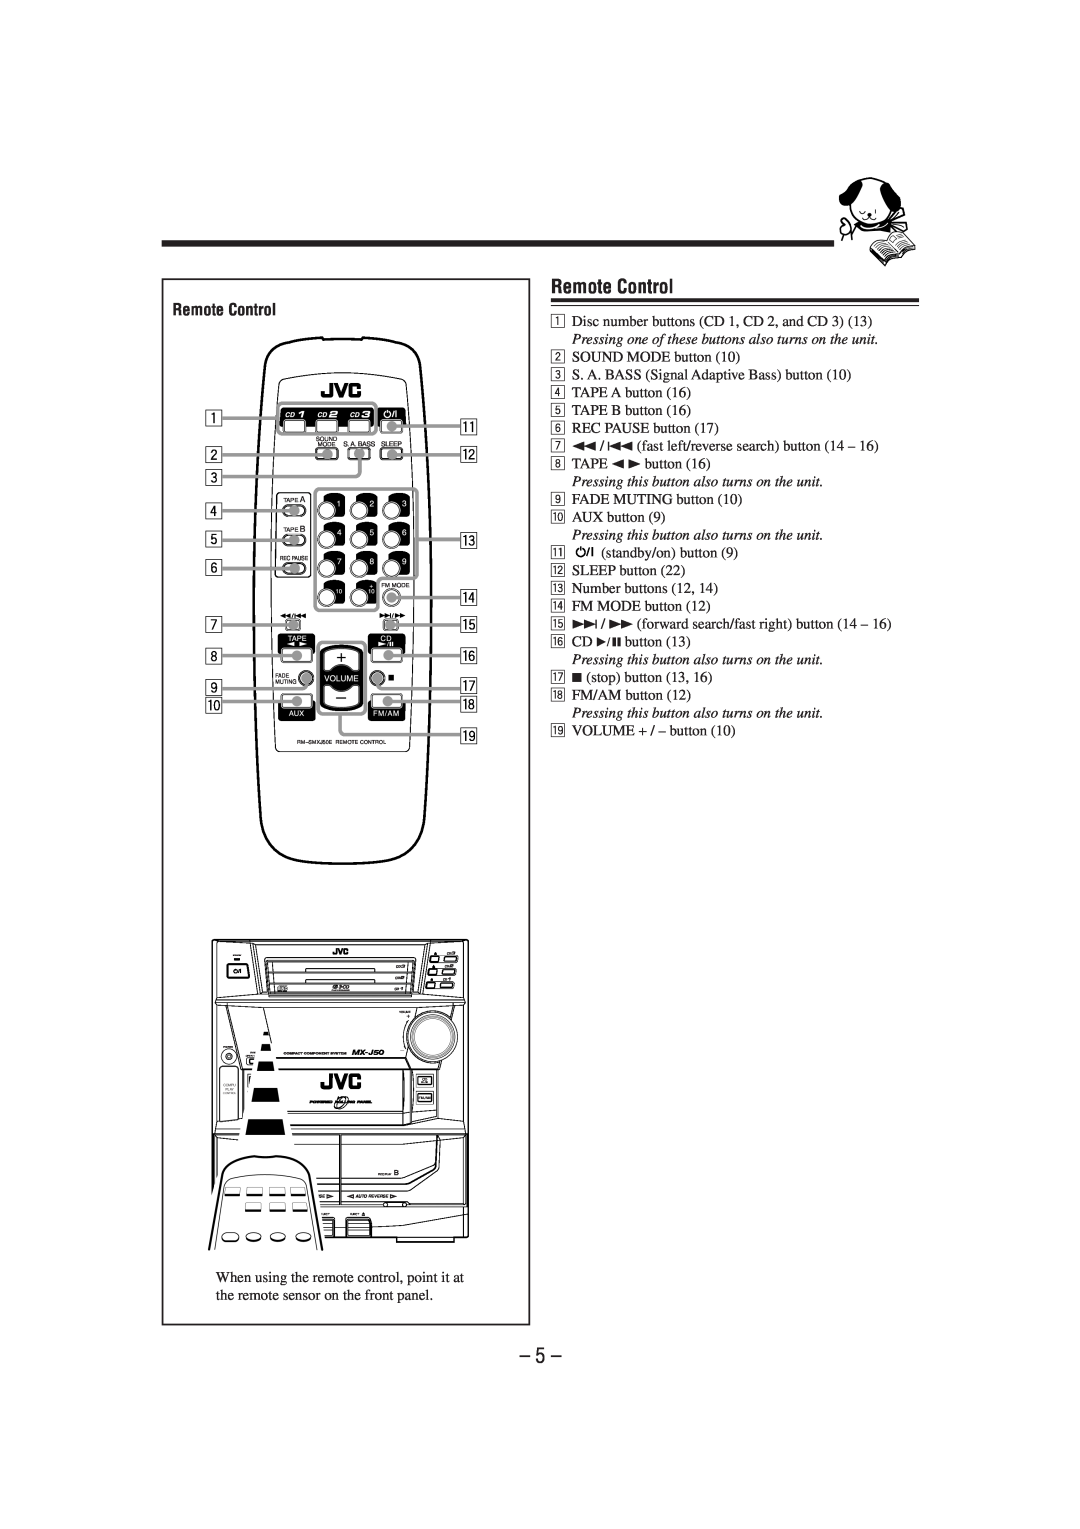 JVC MX-J50 manual Remote Control 